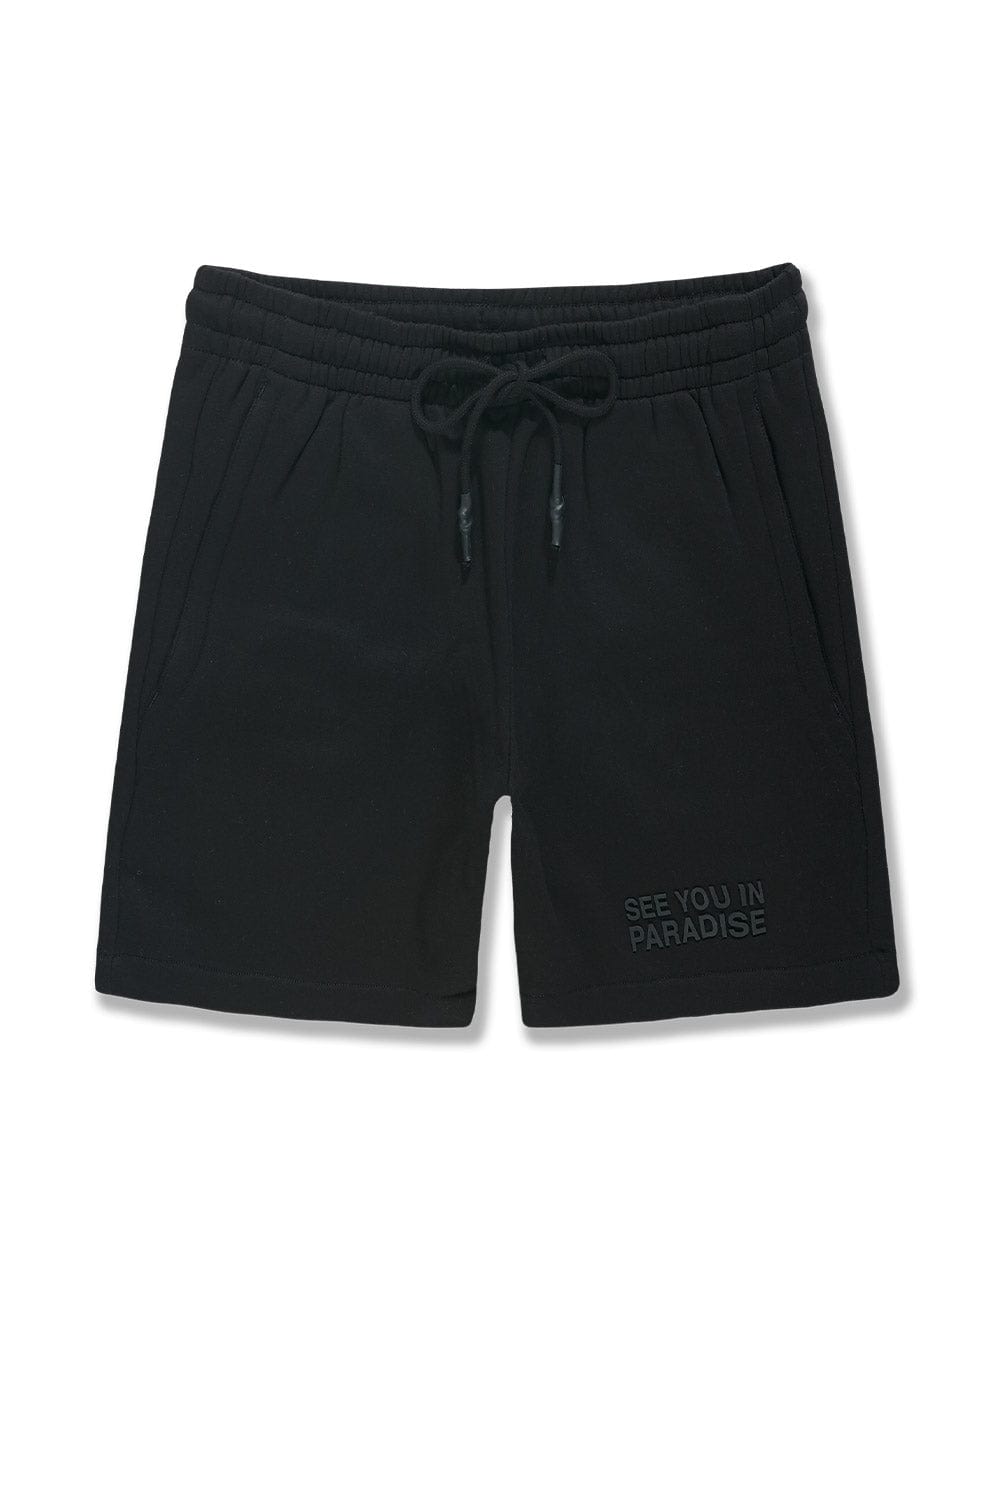 Jordan Craig Retro - Paradise Tonal Shorts Black / S